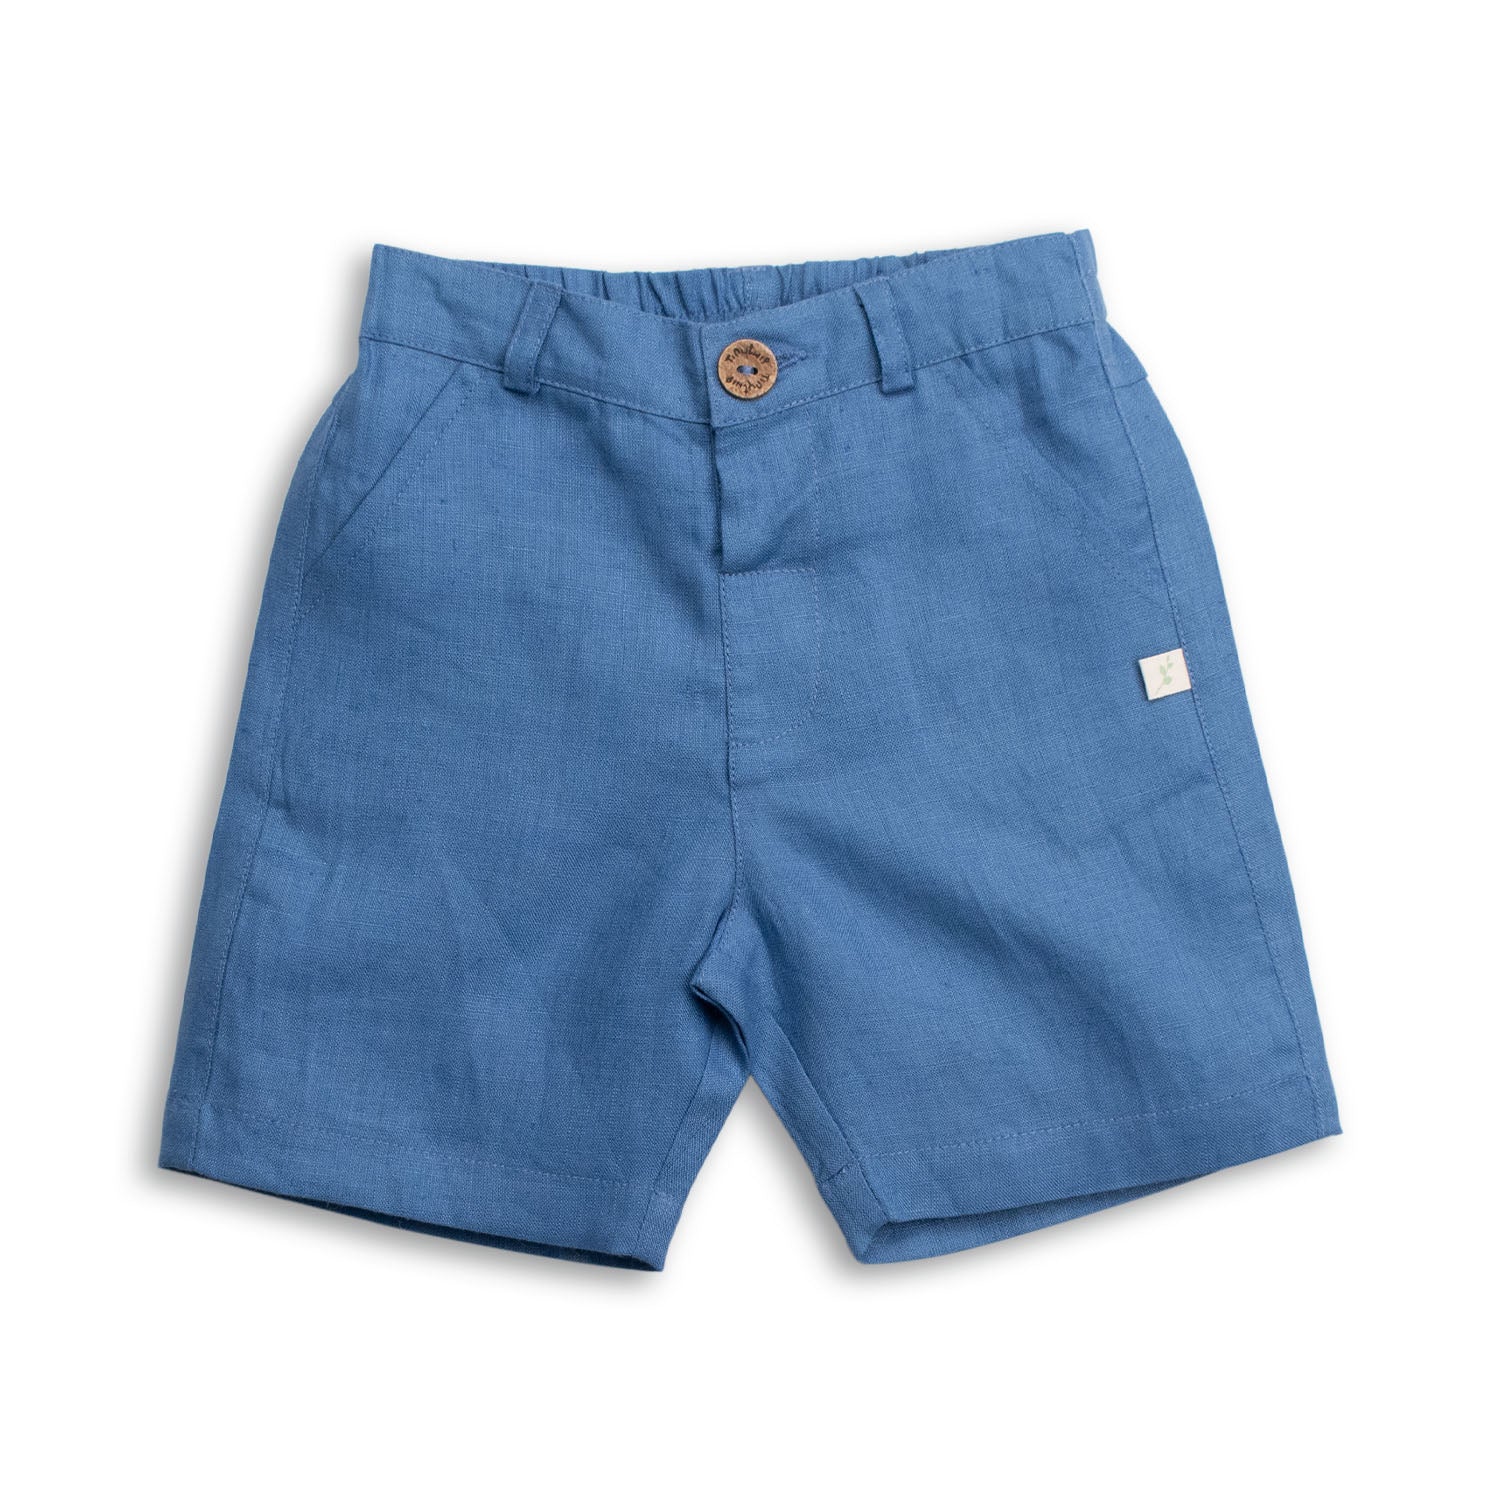 Tiny Twig Boys Dress Shorts - Deep Blue Linen